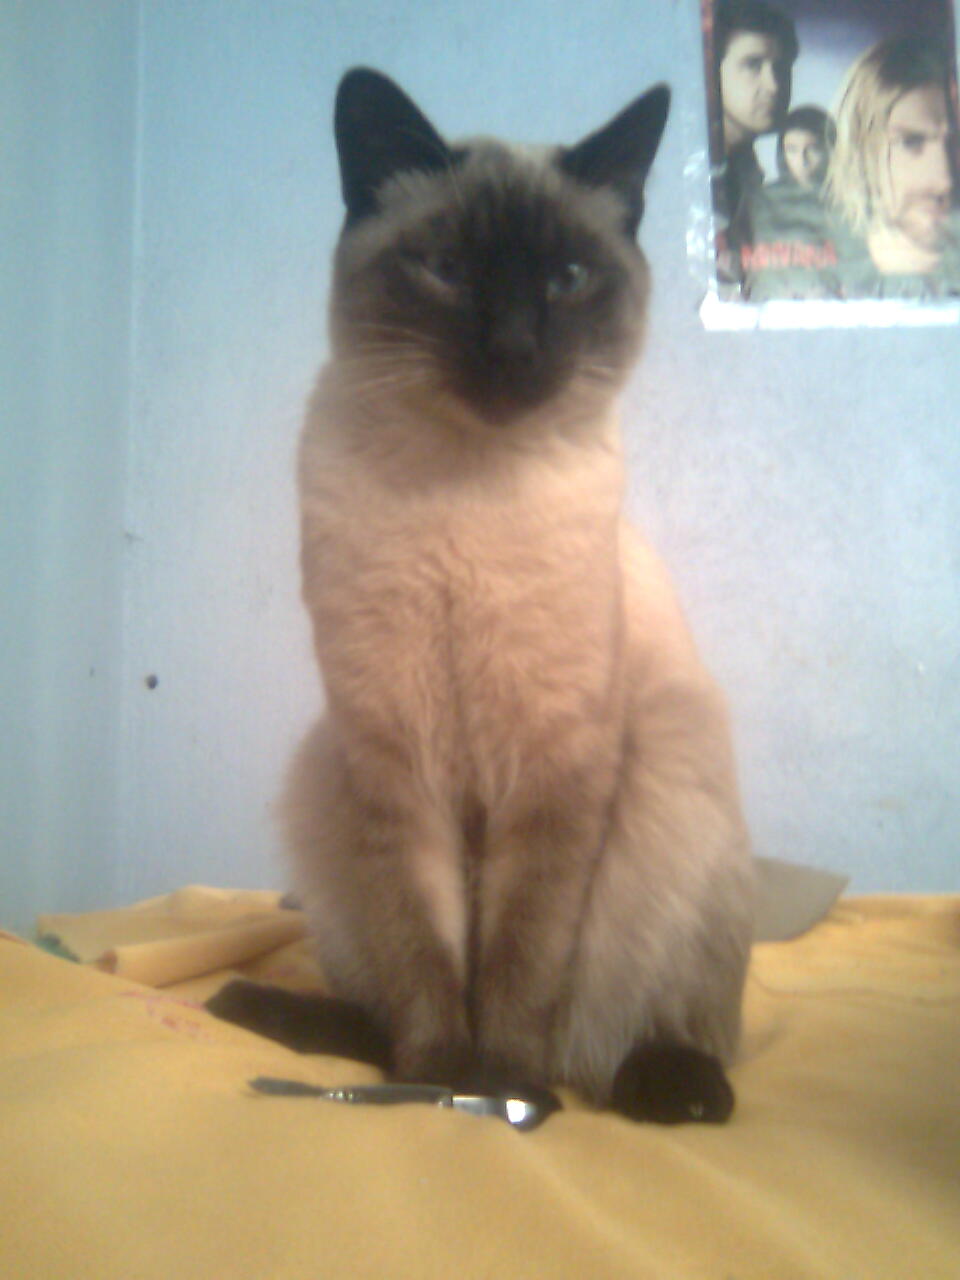 File:Mi gato siames.jpg - Wikimedia Commons